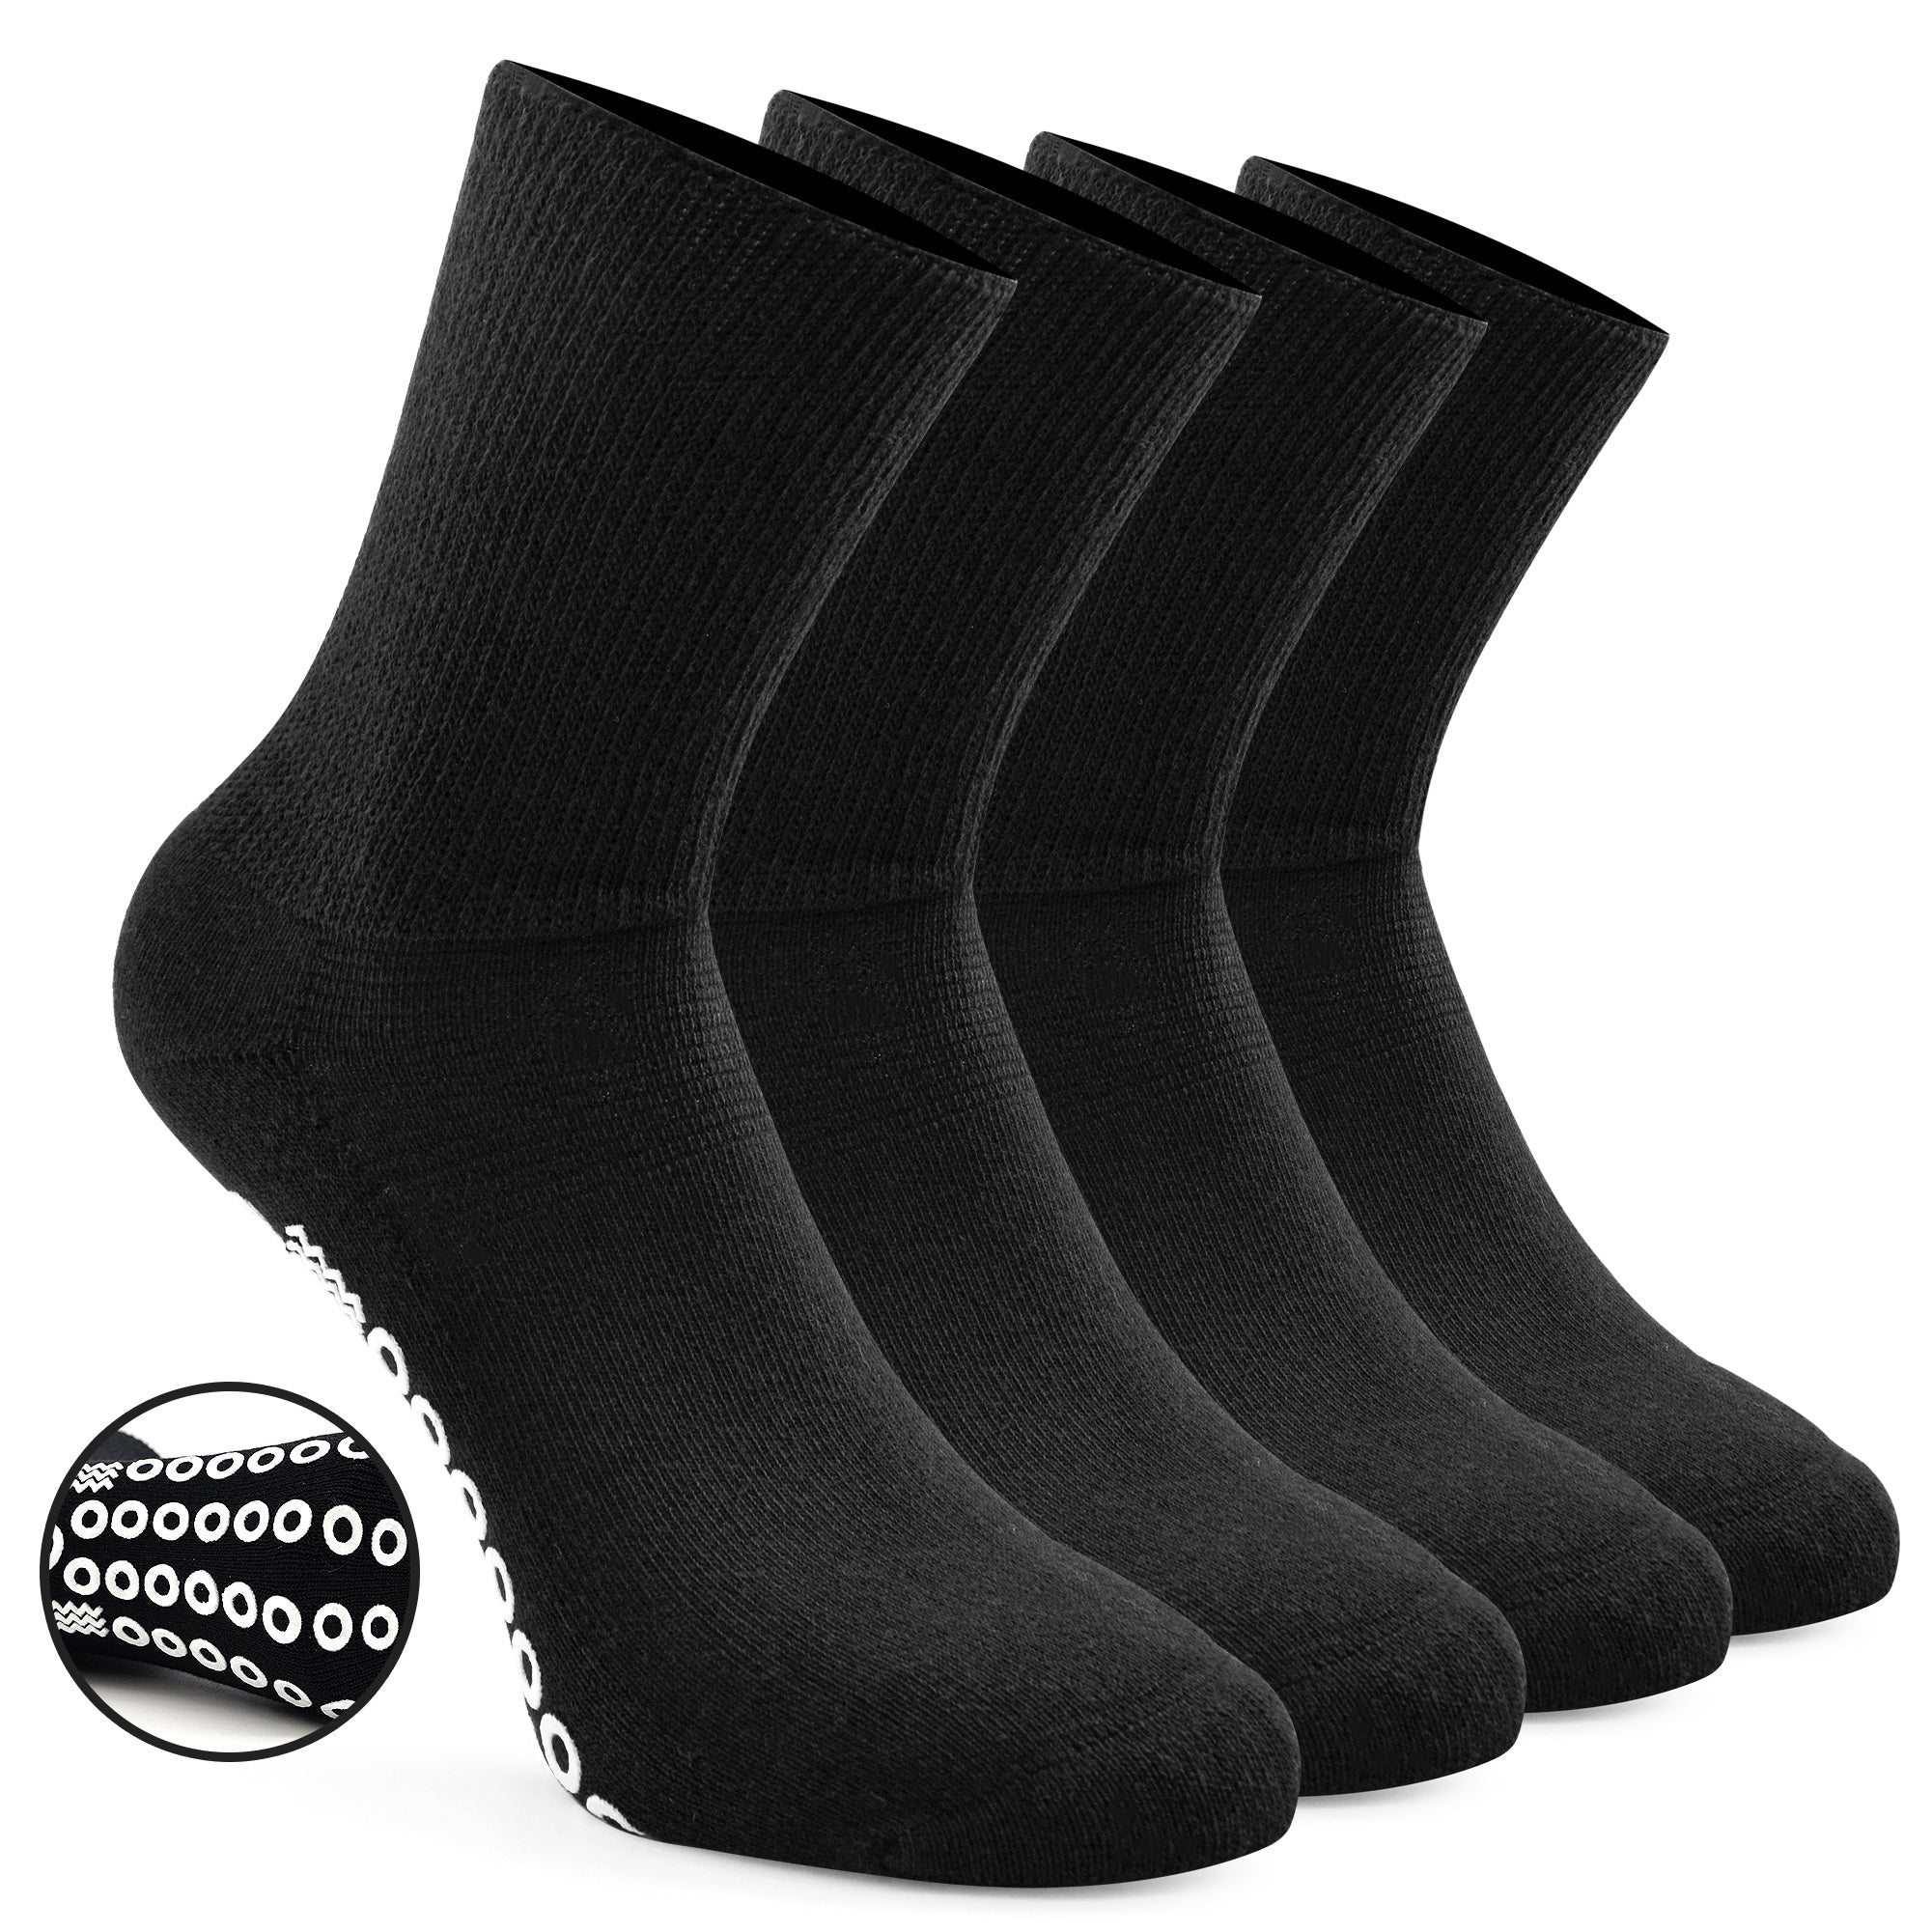 Anti Skid Socks Non Slip Non Binding With Grips Hospital Diabetic Crew  Socks For Men Women